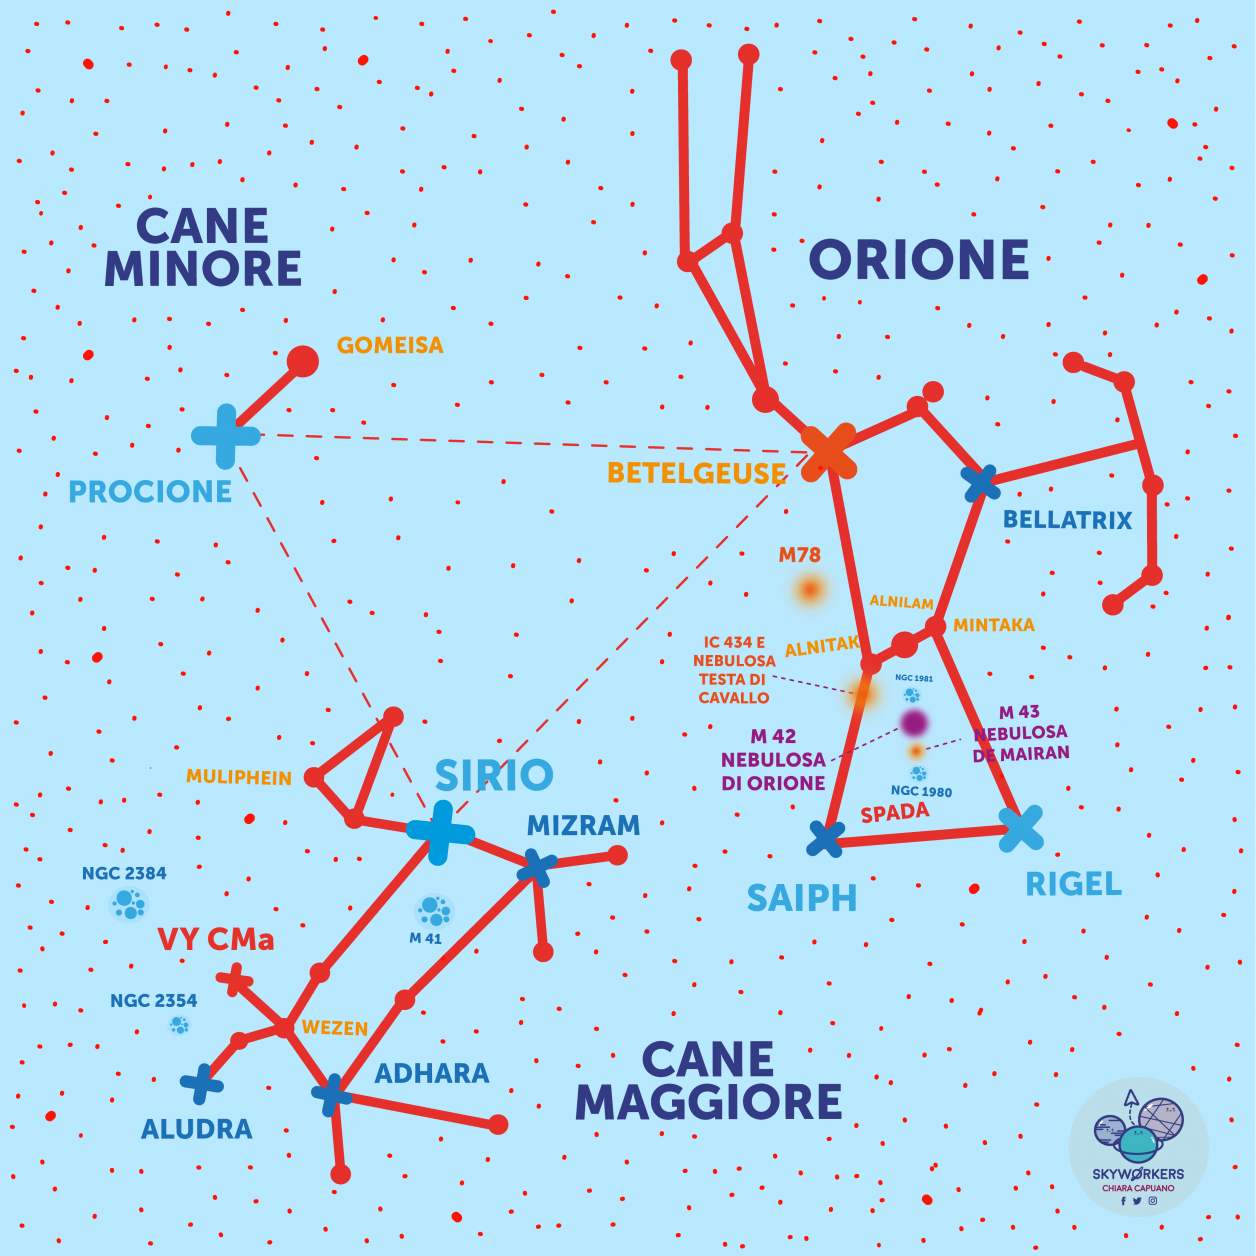 Triangolo Invernale, Orione, Cane Maggiore, Cane Minore